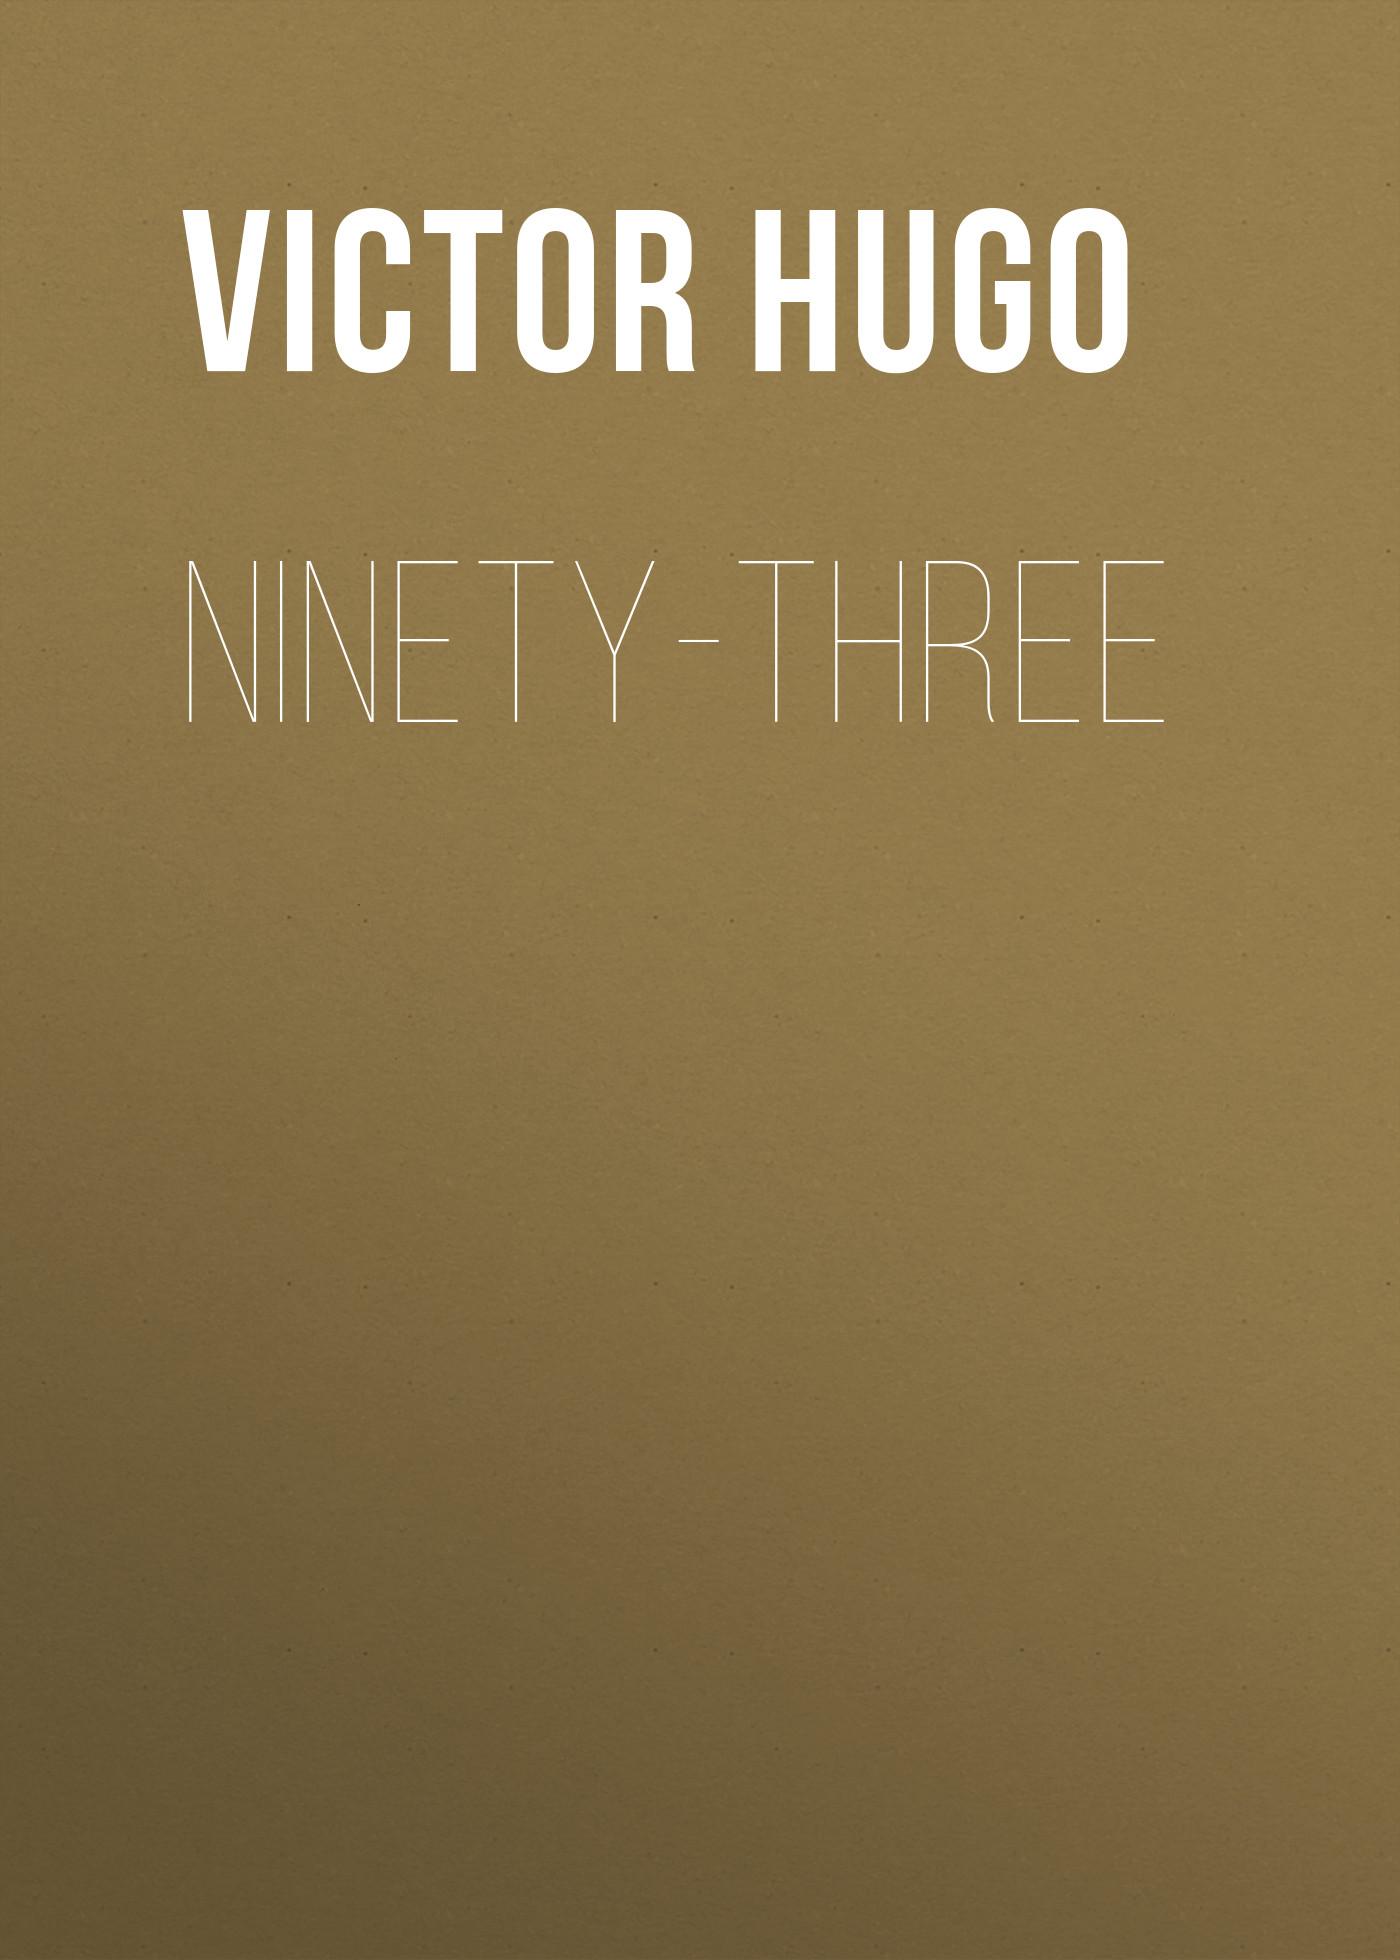 Книга Ninety-Three из серии , созданная Victor Hugo, может относится к жанру Литература 19 века, Зарубежная старинная литература, Зарубежная классика. Стоимость электронной книги Ninety-Three с идентификатором 25229764 составляет 0 руб.